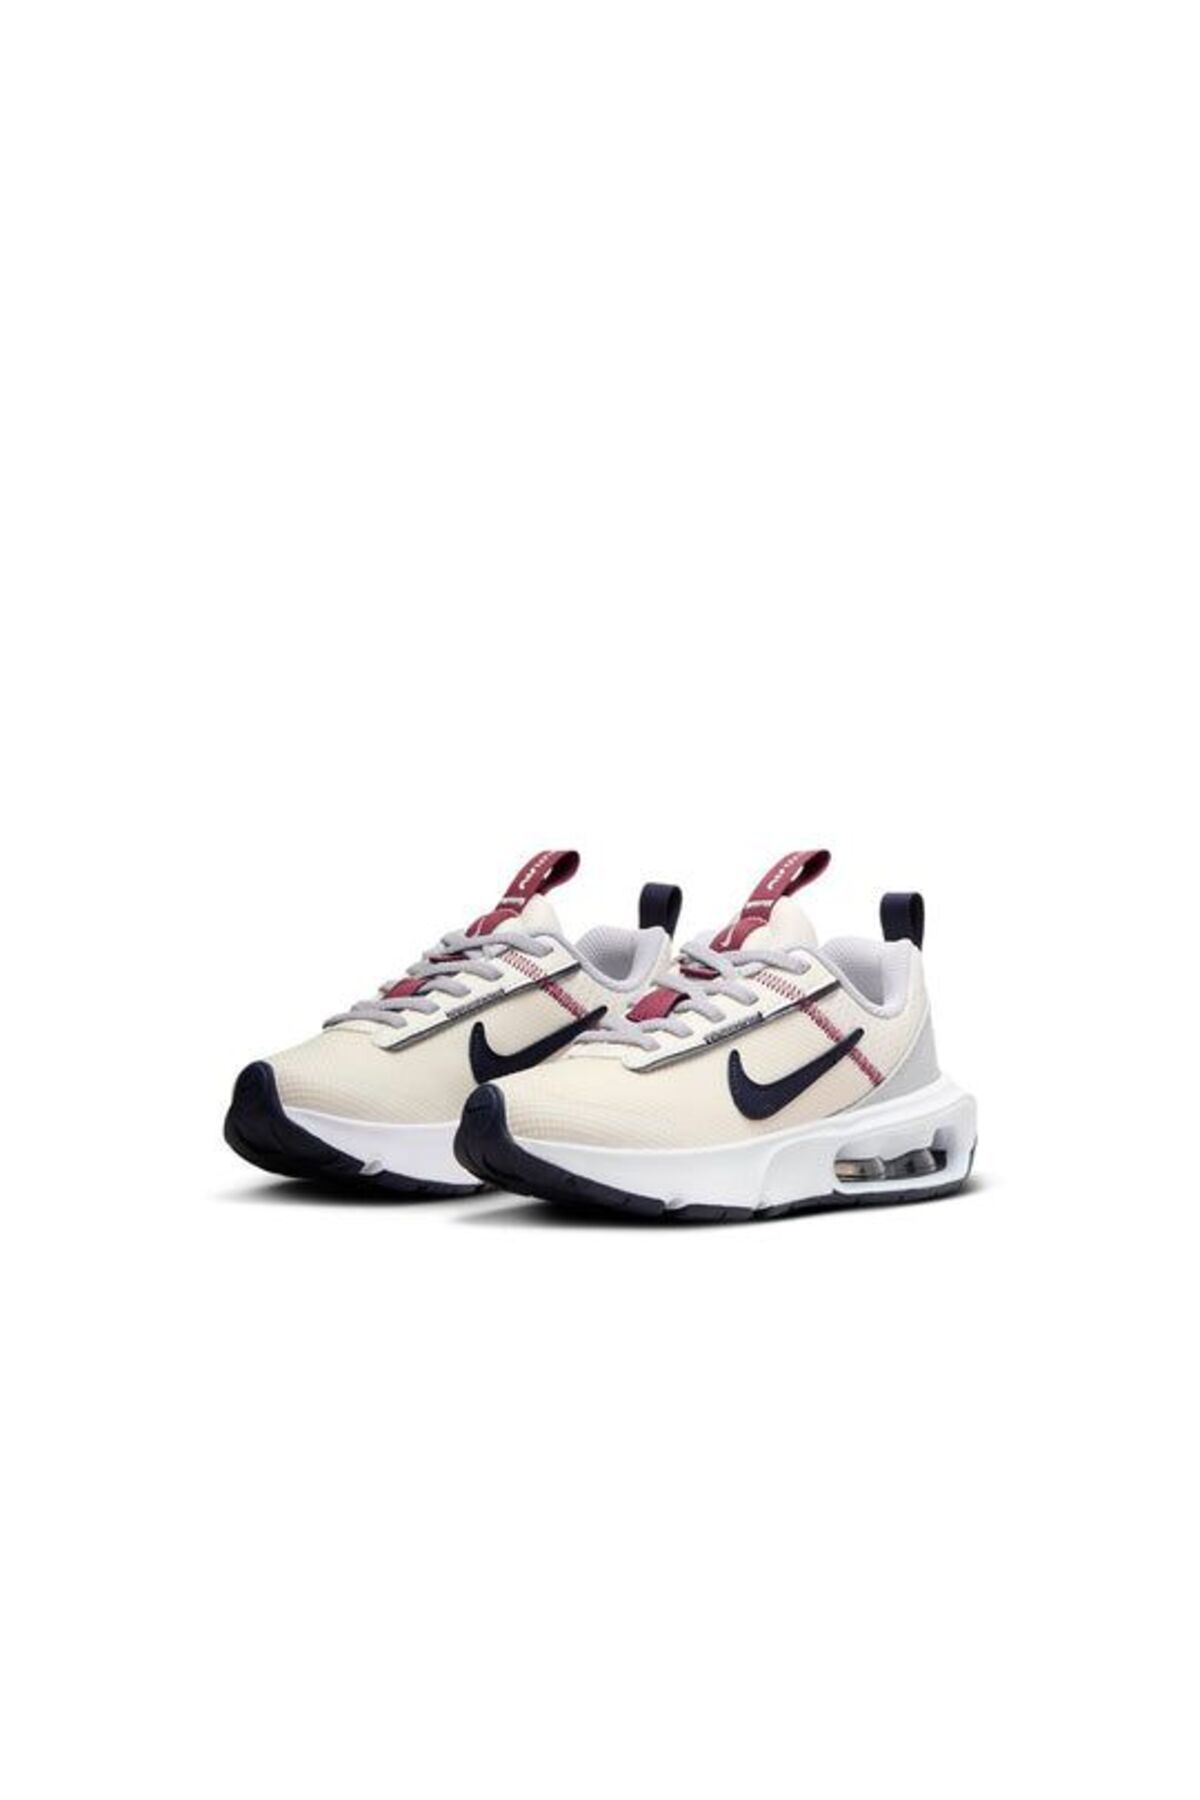 Nike Bej - Gri Erkek Yürüyüş çocuk Ayakkabısı Dh9394-006 Air Max Intrlk Lite -stilim spor